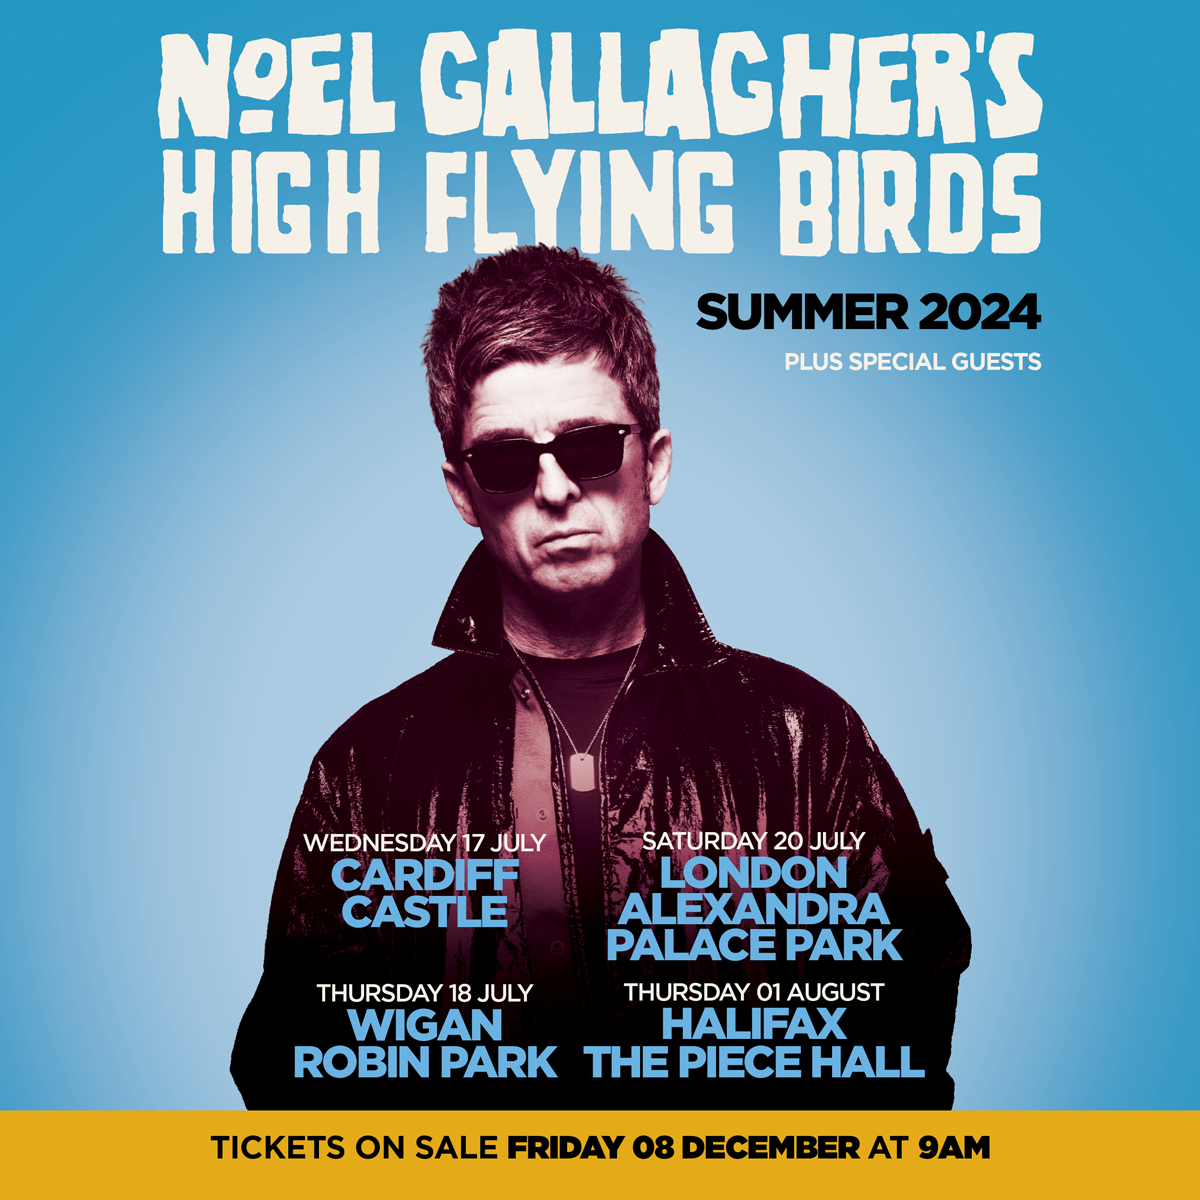 Noel Gallagher's High Flying Birds in der The Piece Hall Halifax Tickets